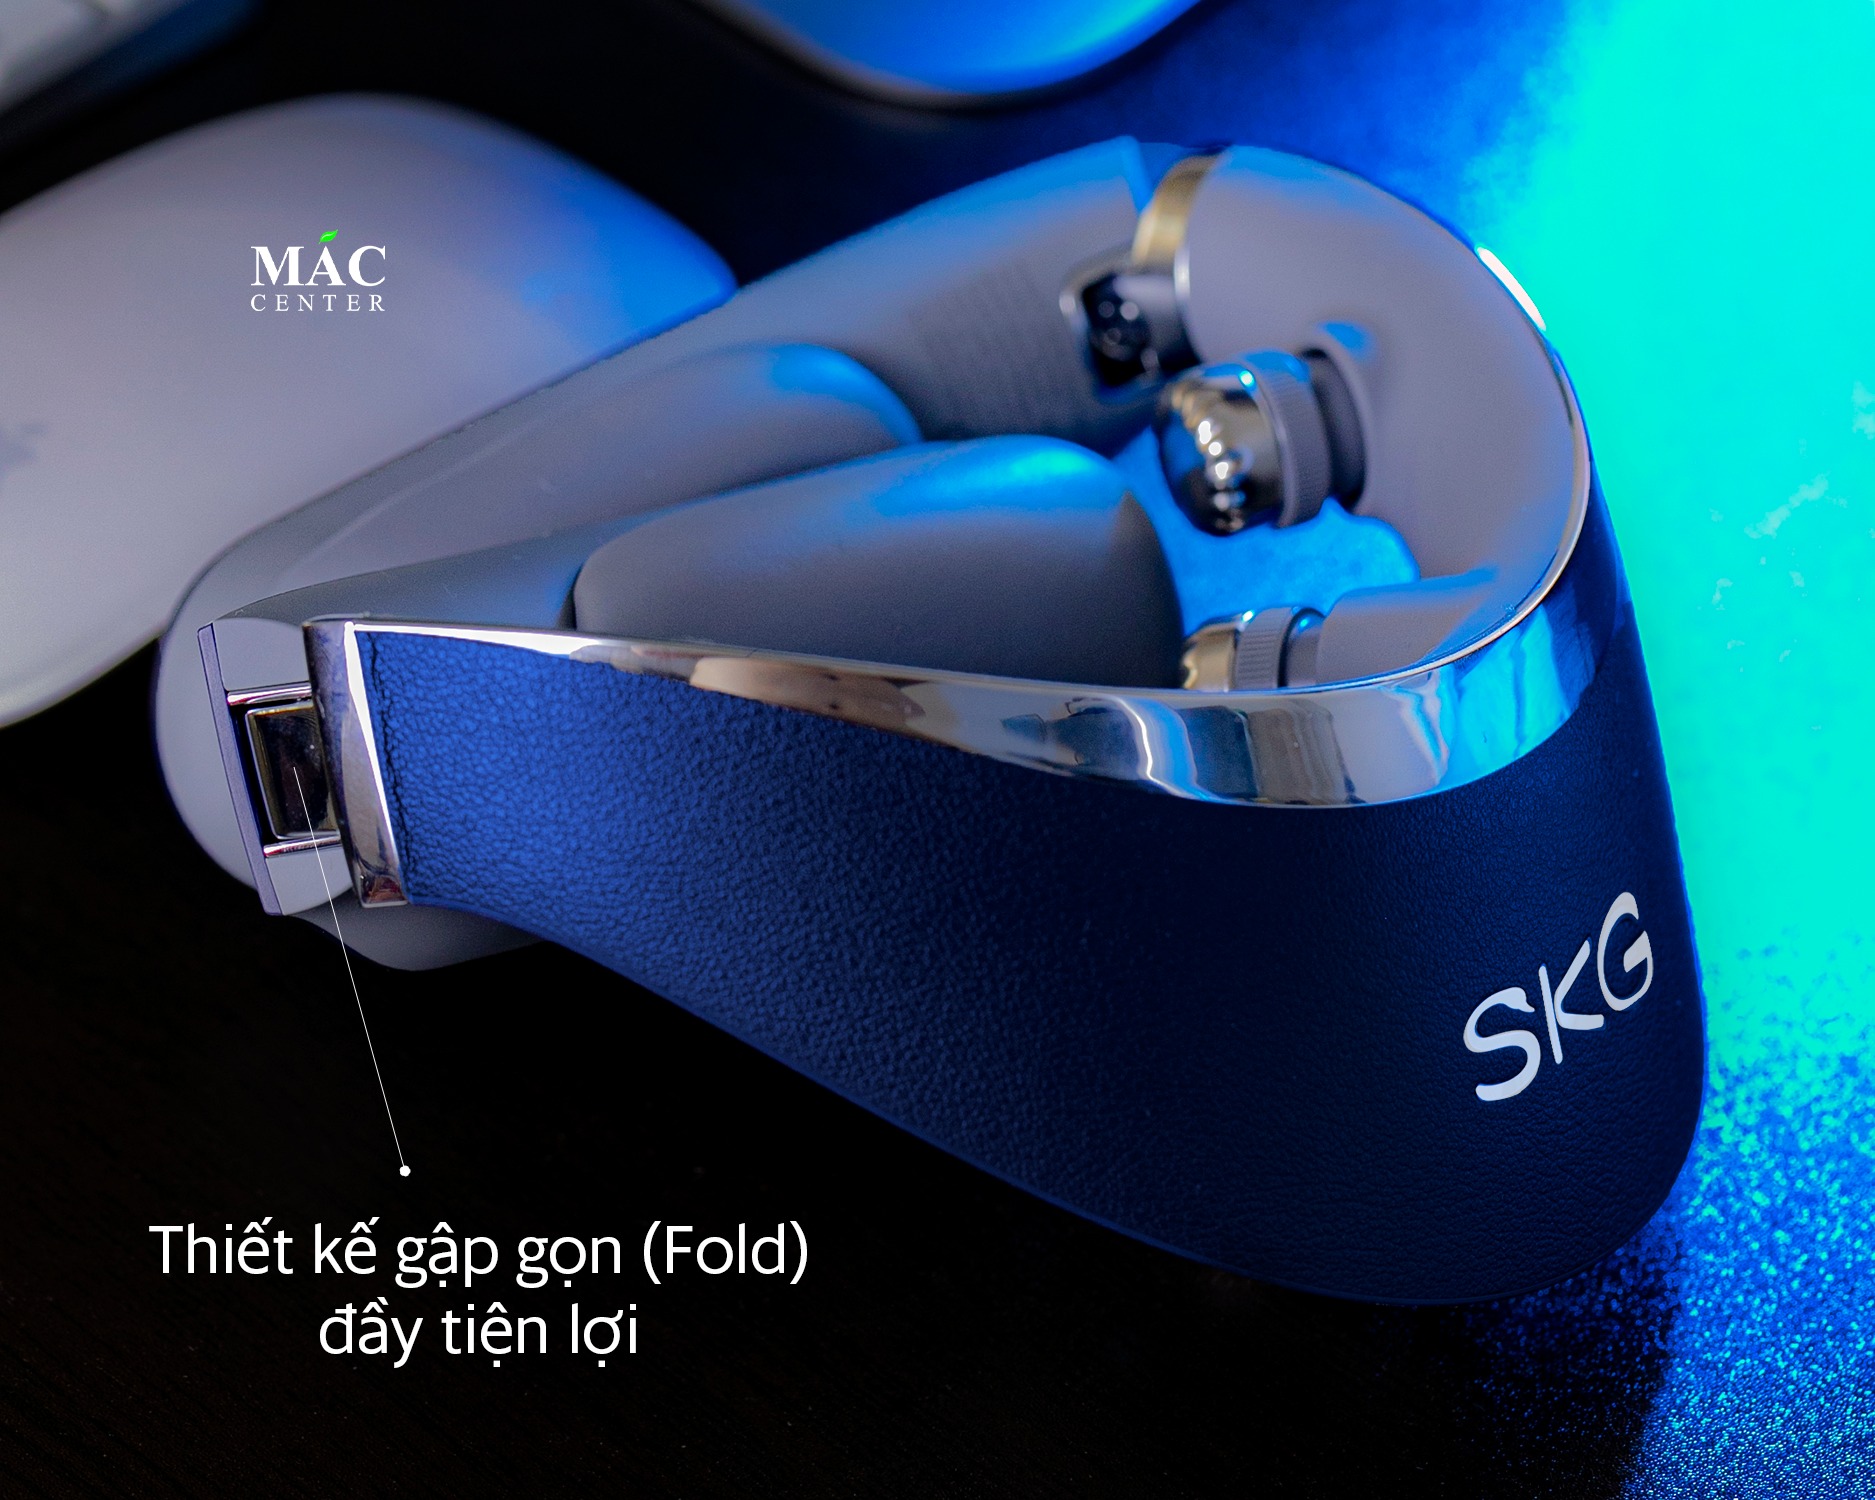 Máy massage cổ SKG G7 Pro Fold